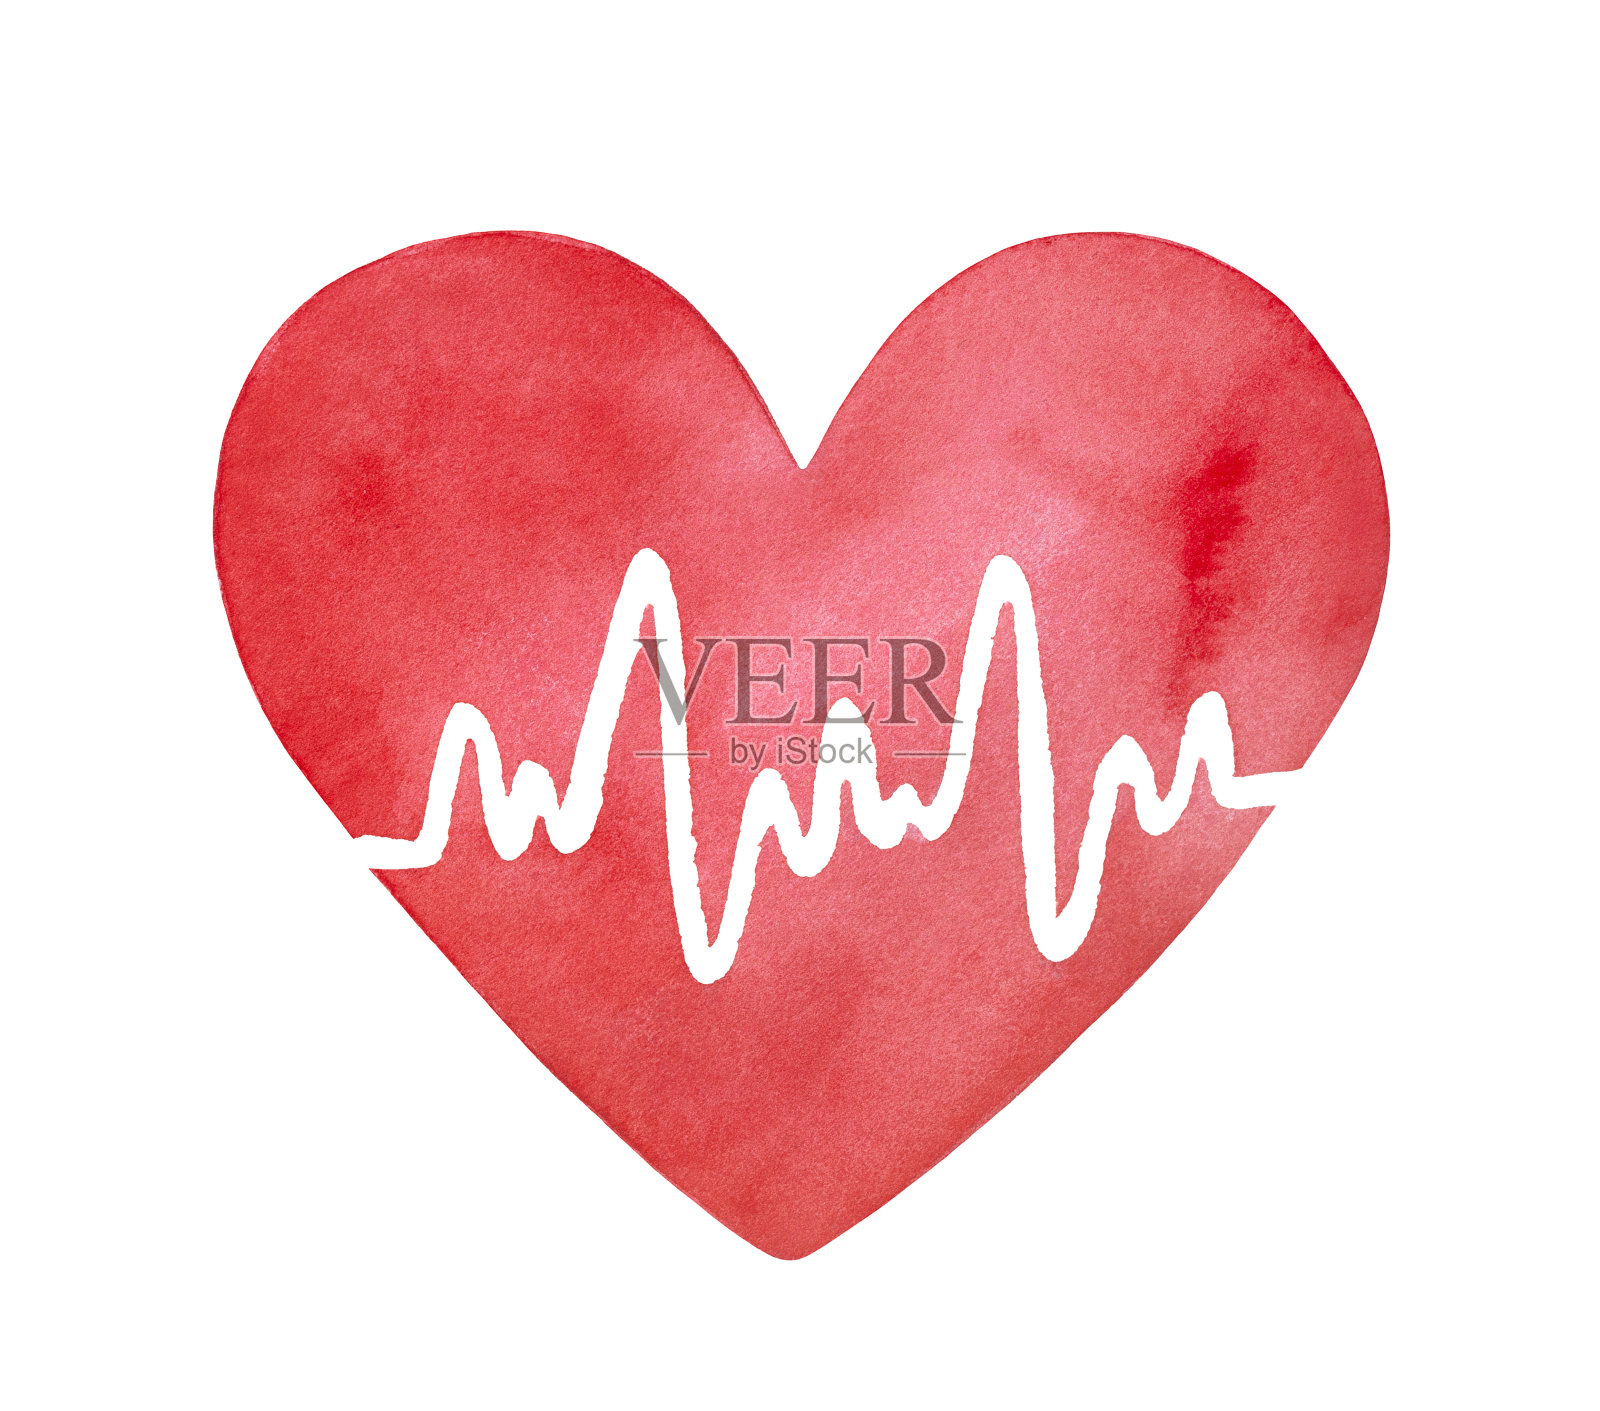 明亮的红色水彩心脏形状与白色心电图线。象征着医学、健康、心脏病学。手绘水彩艺术绘图，剪纸元素的创意设计装饰。设计元素图片